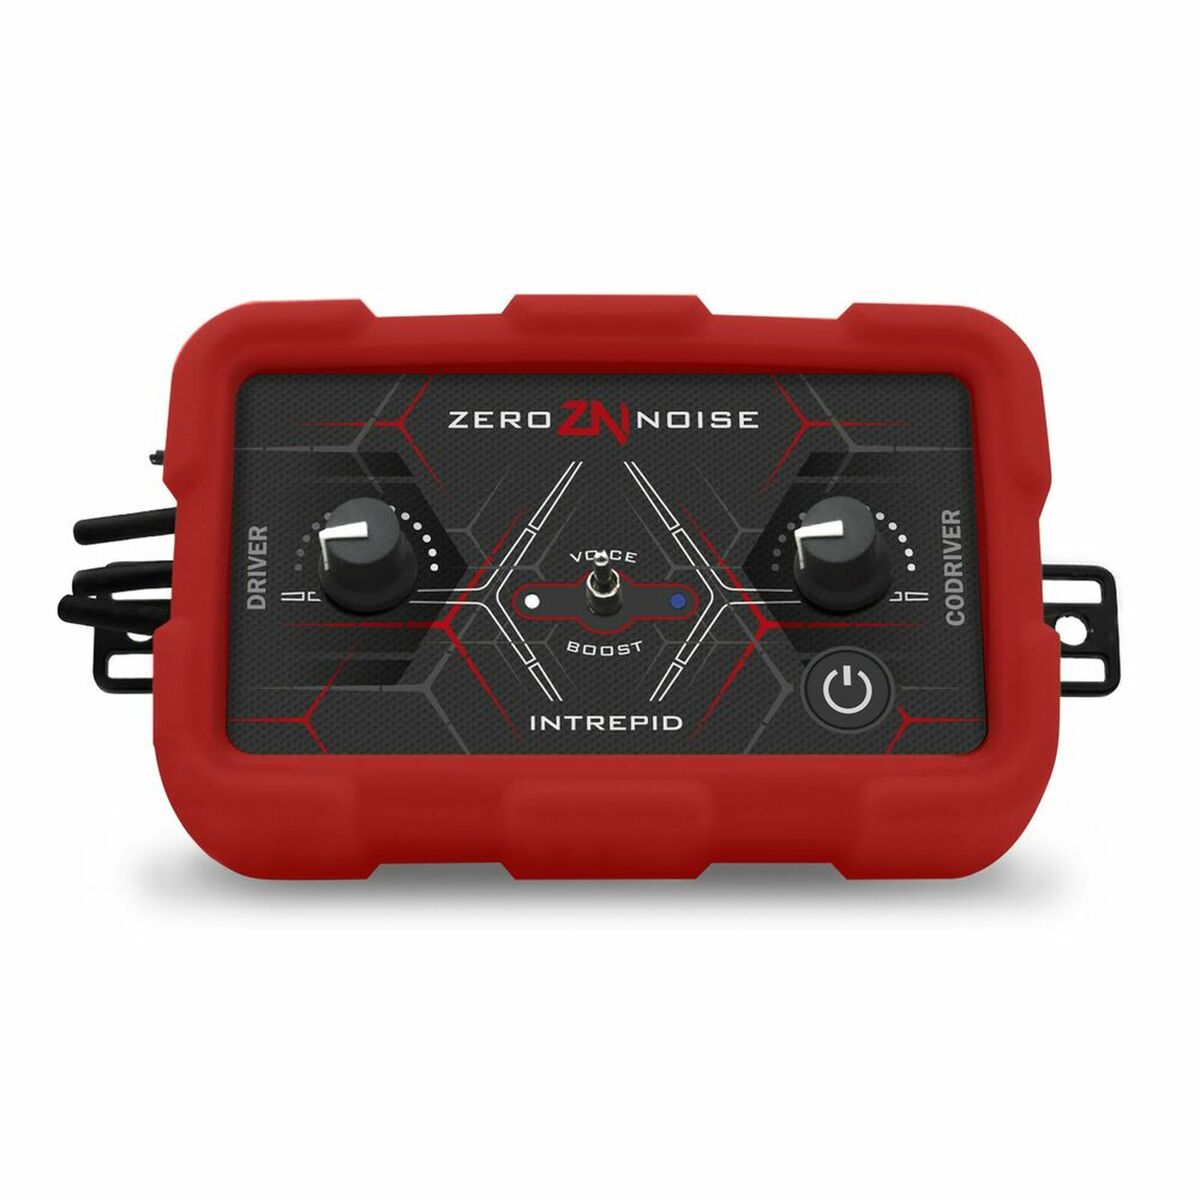 Versterker Zero Noise INTREPID ZERO6100006 Analoog Vrouwelijke nexus met 4 pinnen Rood/Zwart